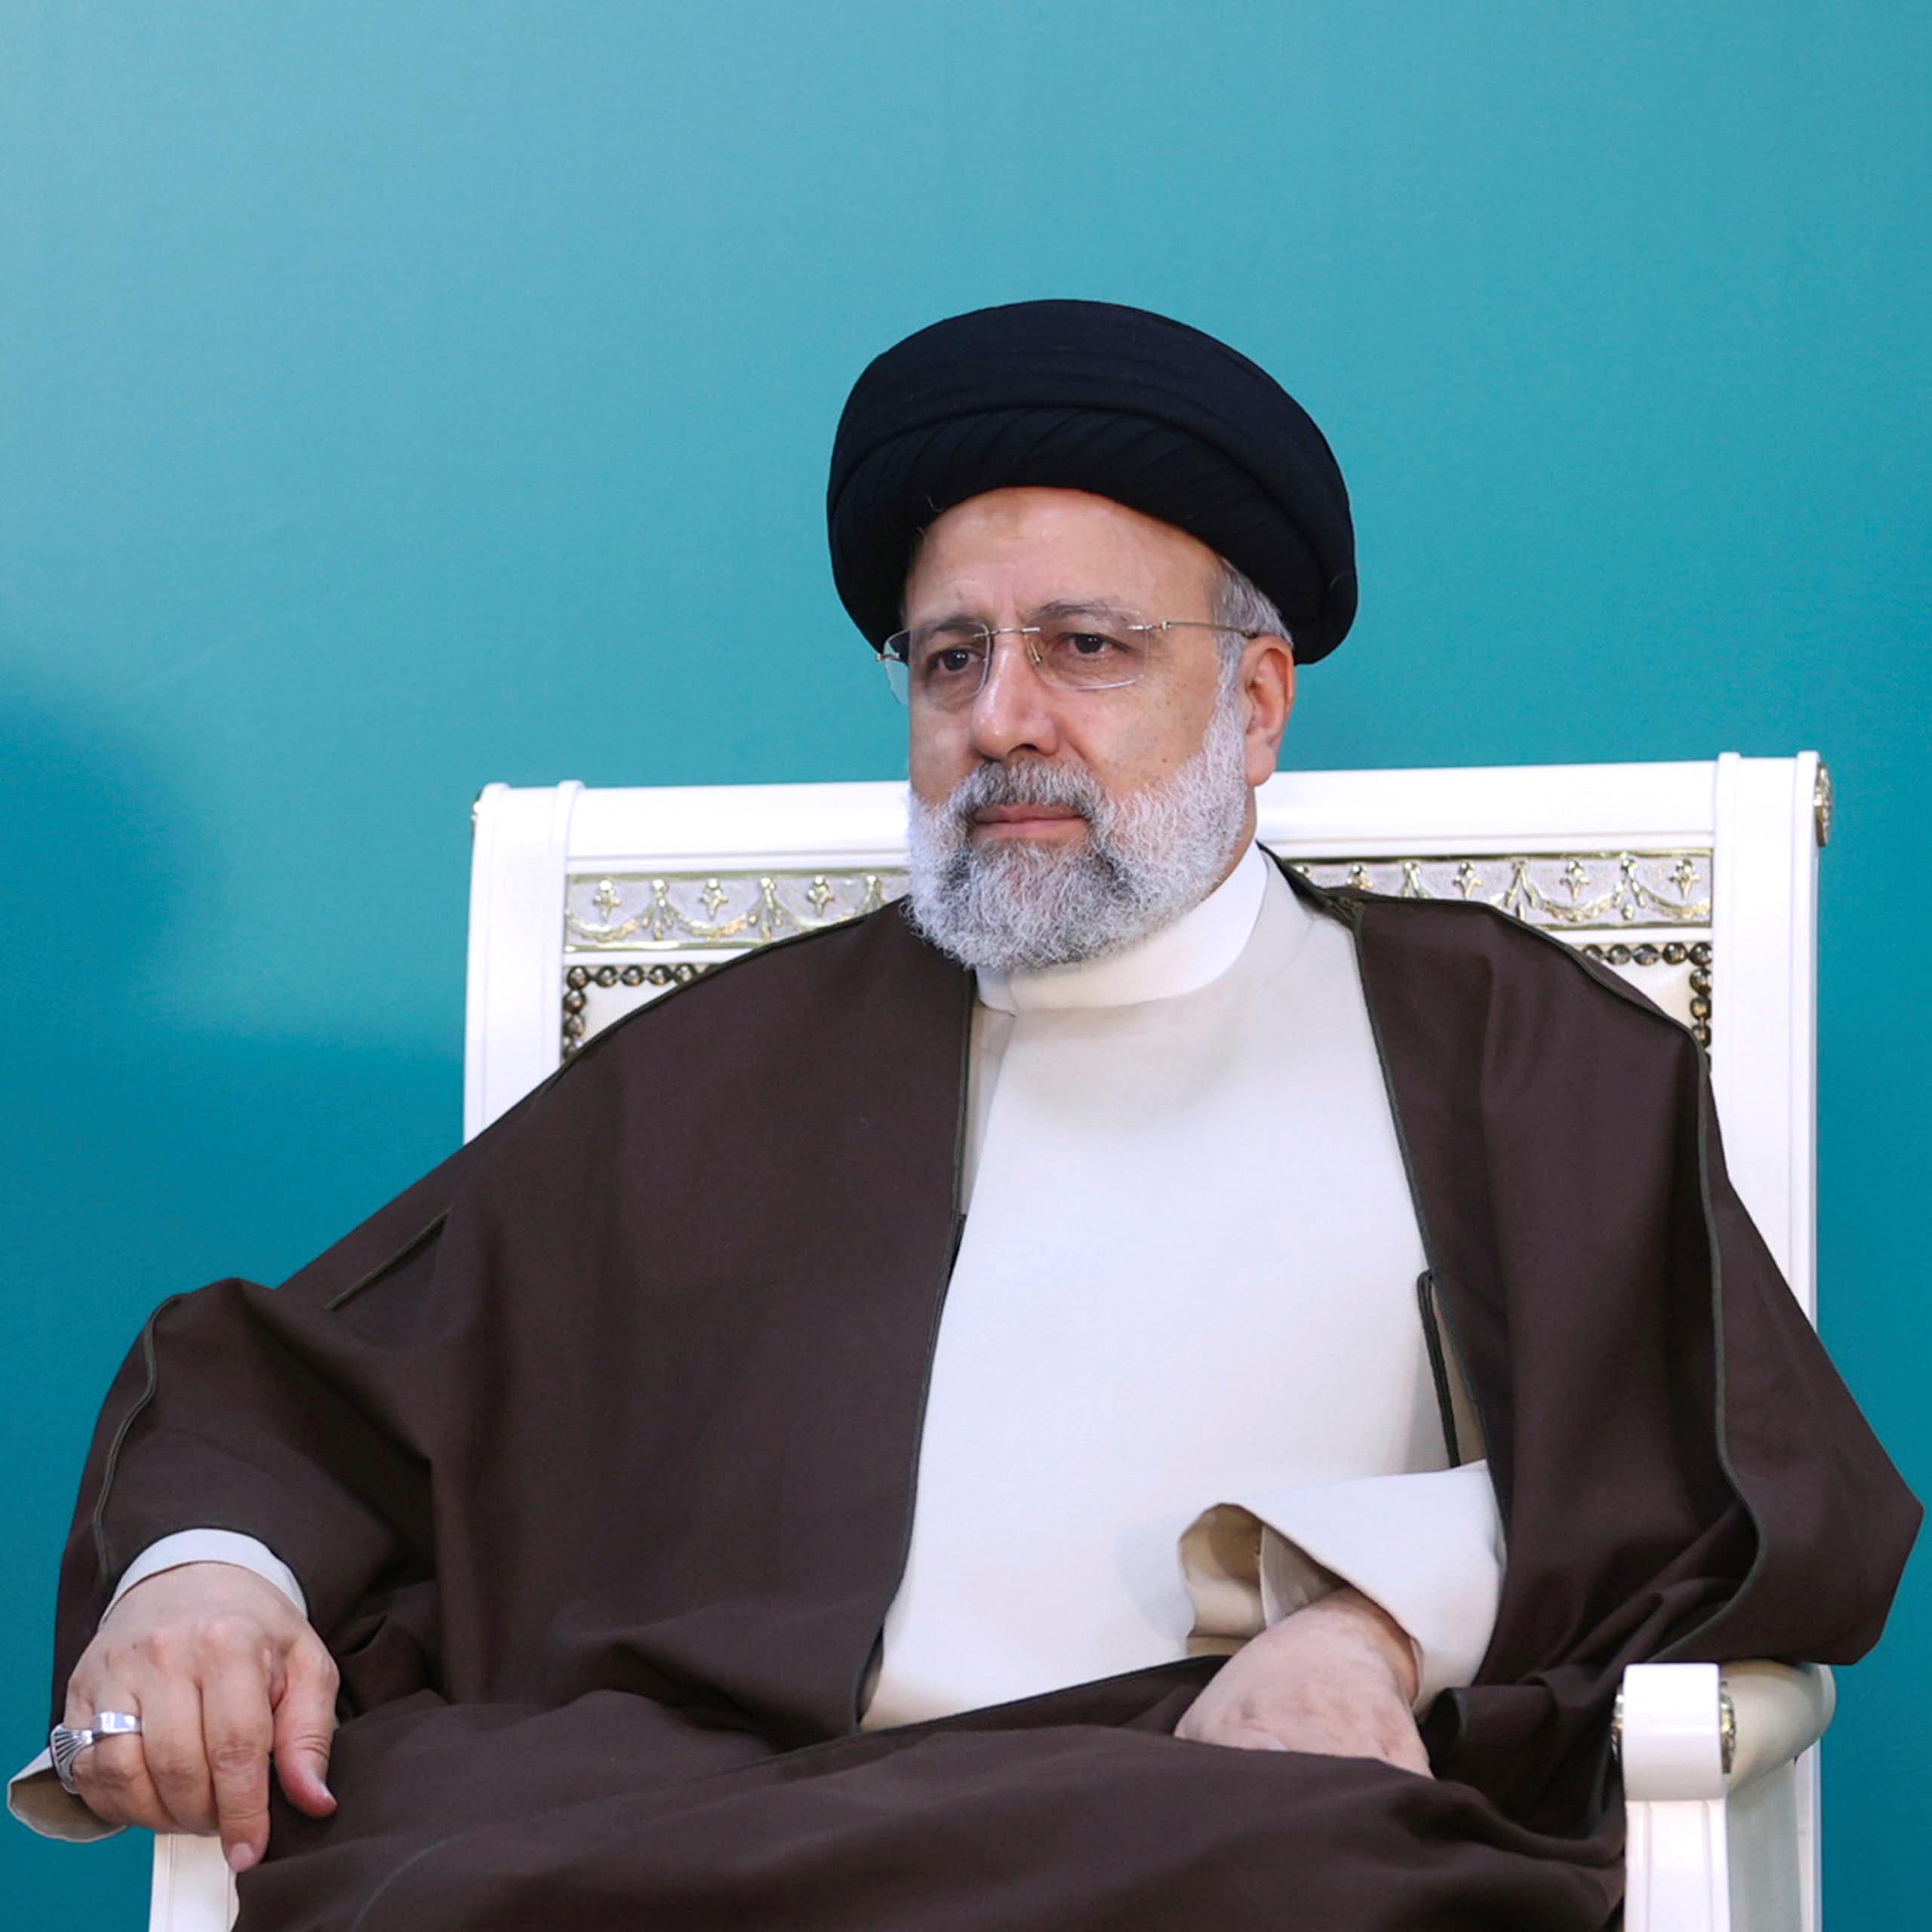 Um homem com trajes tradicionais iranianos senta-se em uma cadeira.